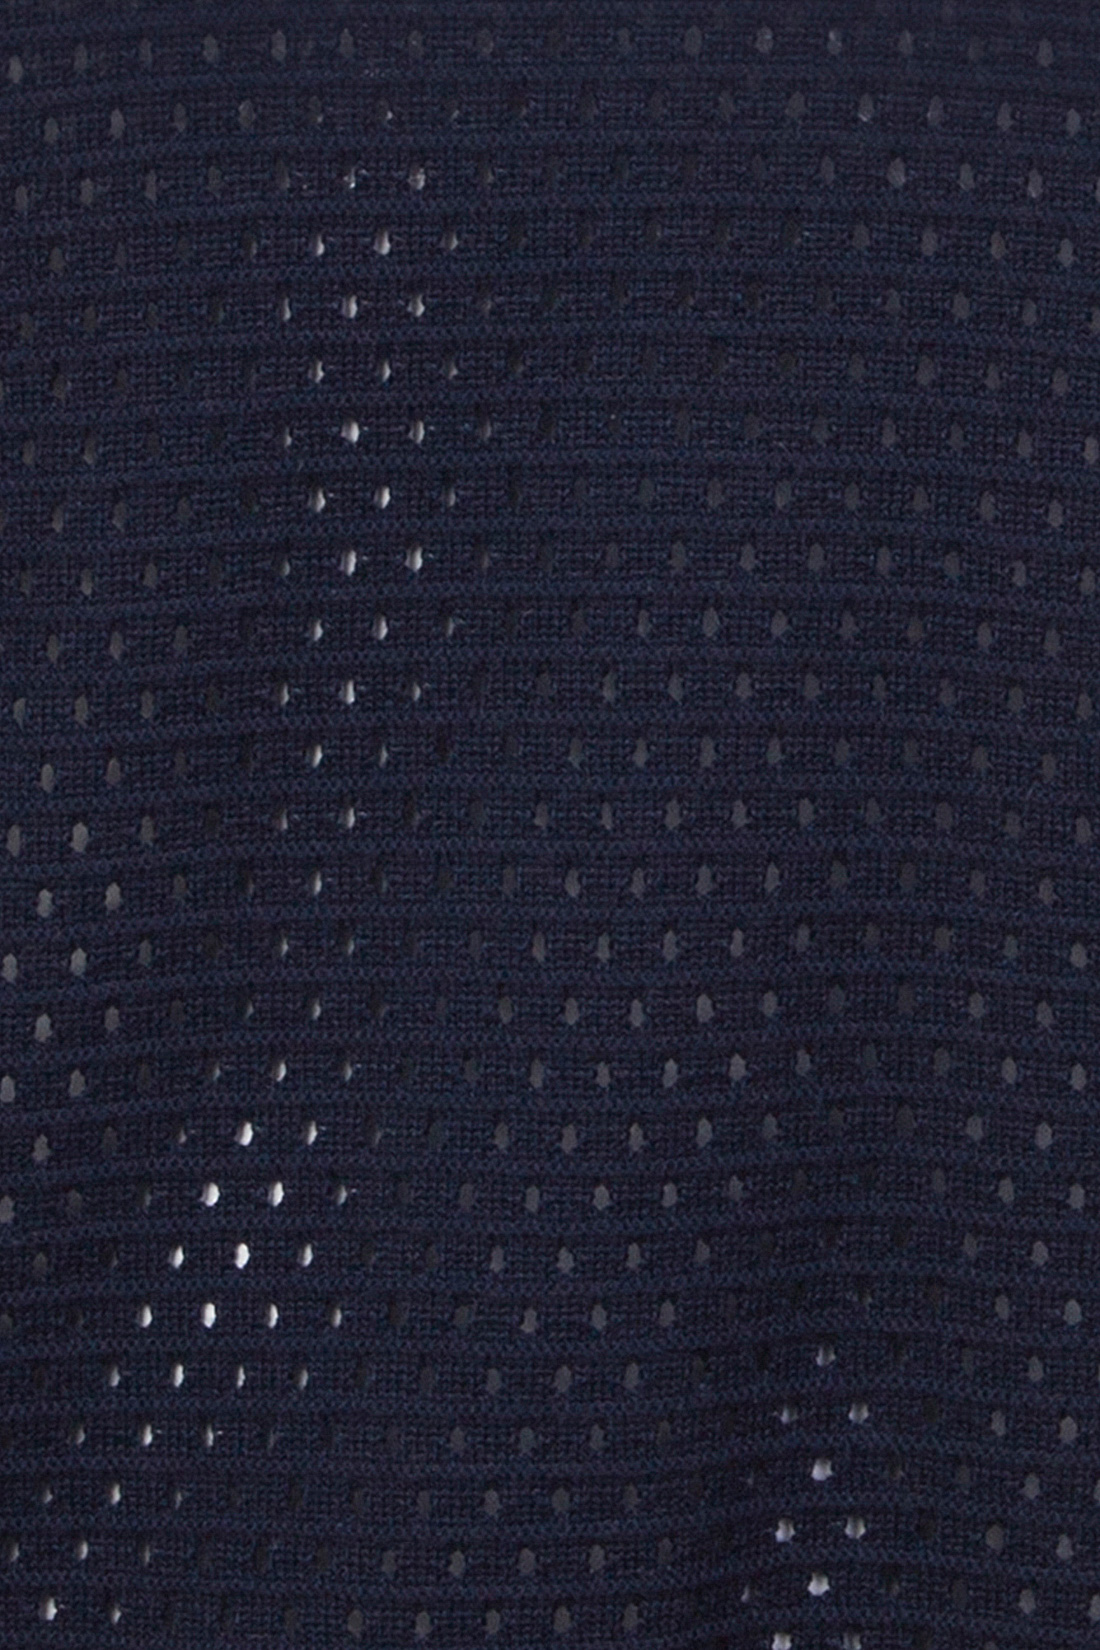 Джемпер ажурной вязки (арт. baon B137021), размер M, цвет синий Джемпер ажурной вязки (арт. baon B137021) - фото 3